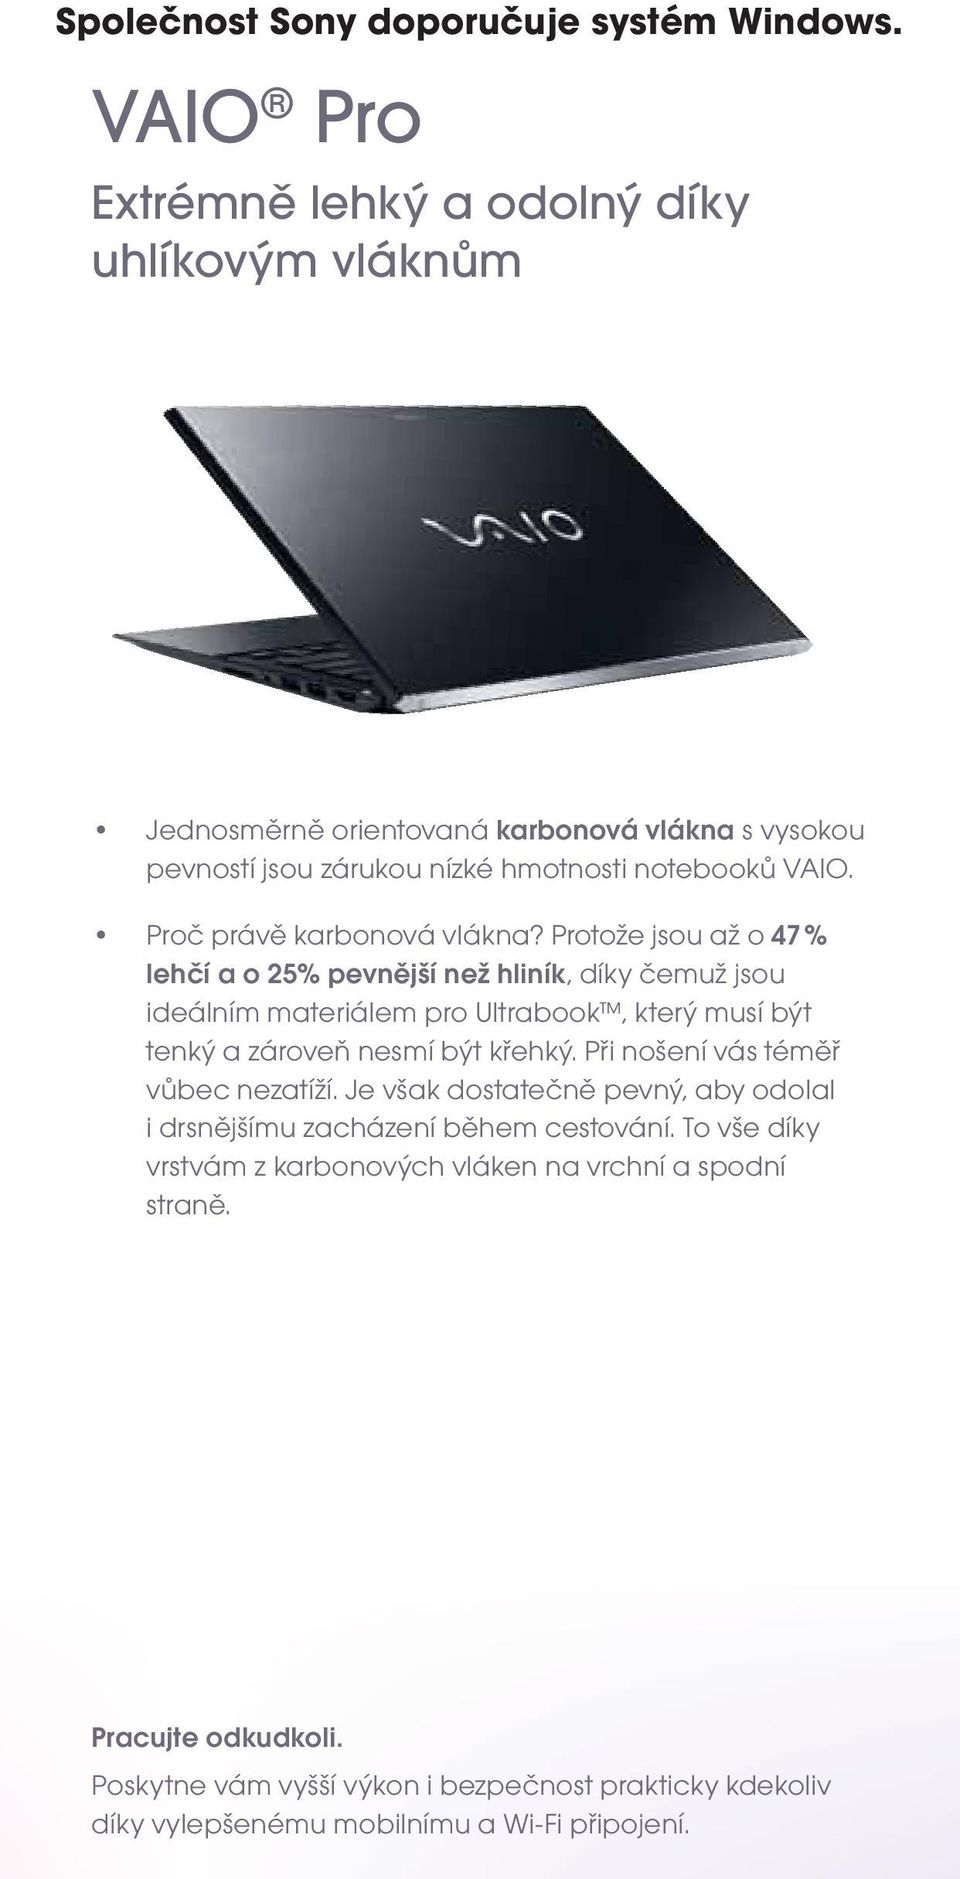 Protože jsou až o 47 % lehčí a o 25% pevnější než hliník, díky čemuž jsou ideálním materiálem pro Ultrabook, který musí být tenký a zároveň nesmí být křehký.